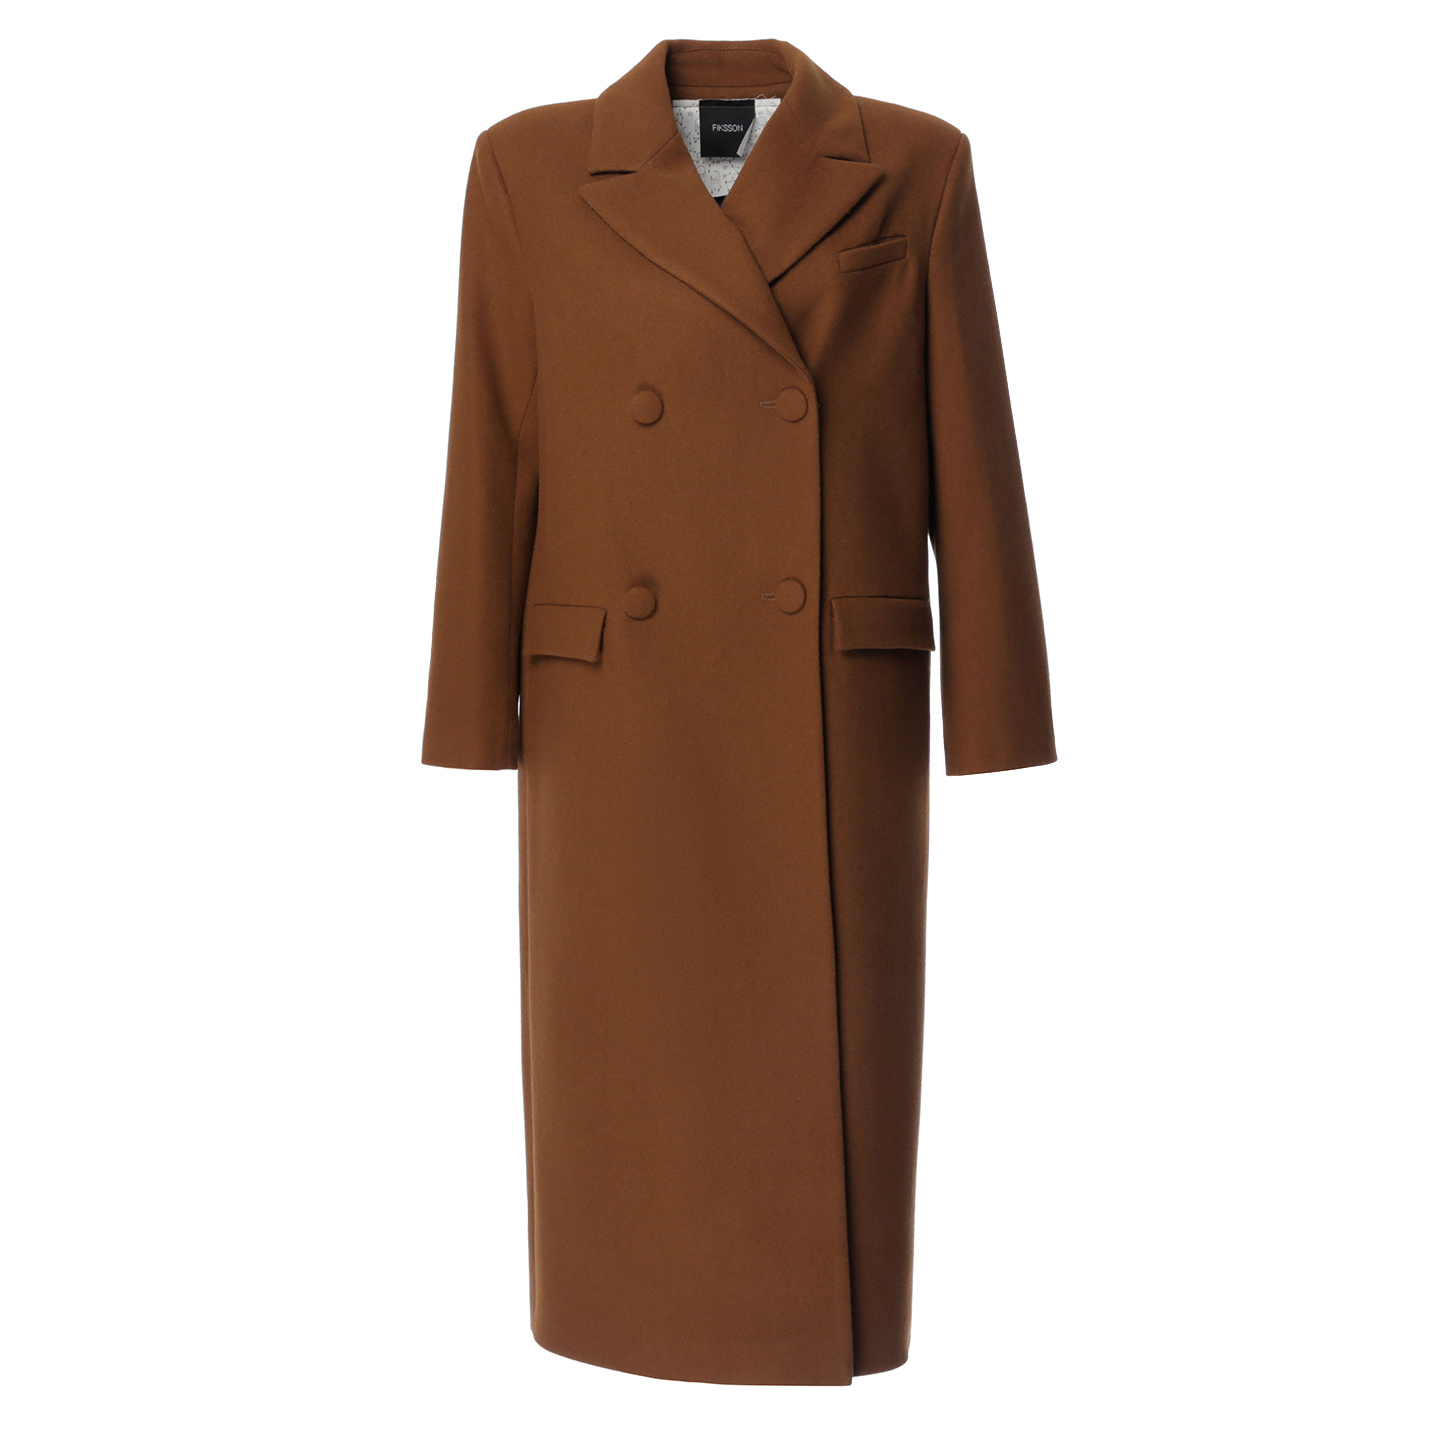 Купить коричневое пальто. Коричневое пальто. Пальто коричневое двубортное. Коричневое пальто женское. Коричневое шерстяное пальто.